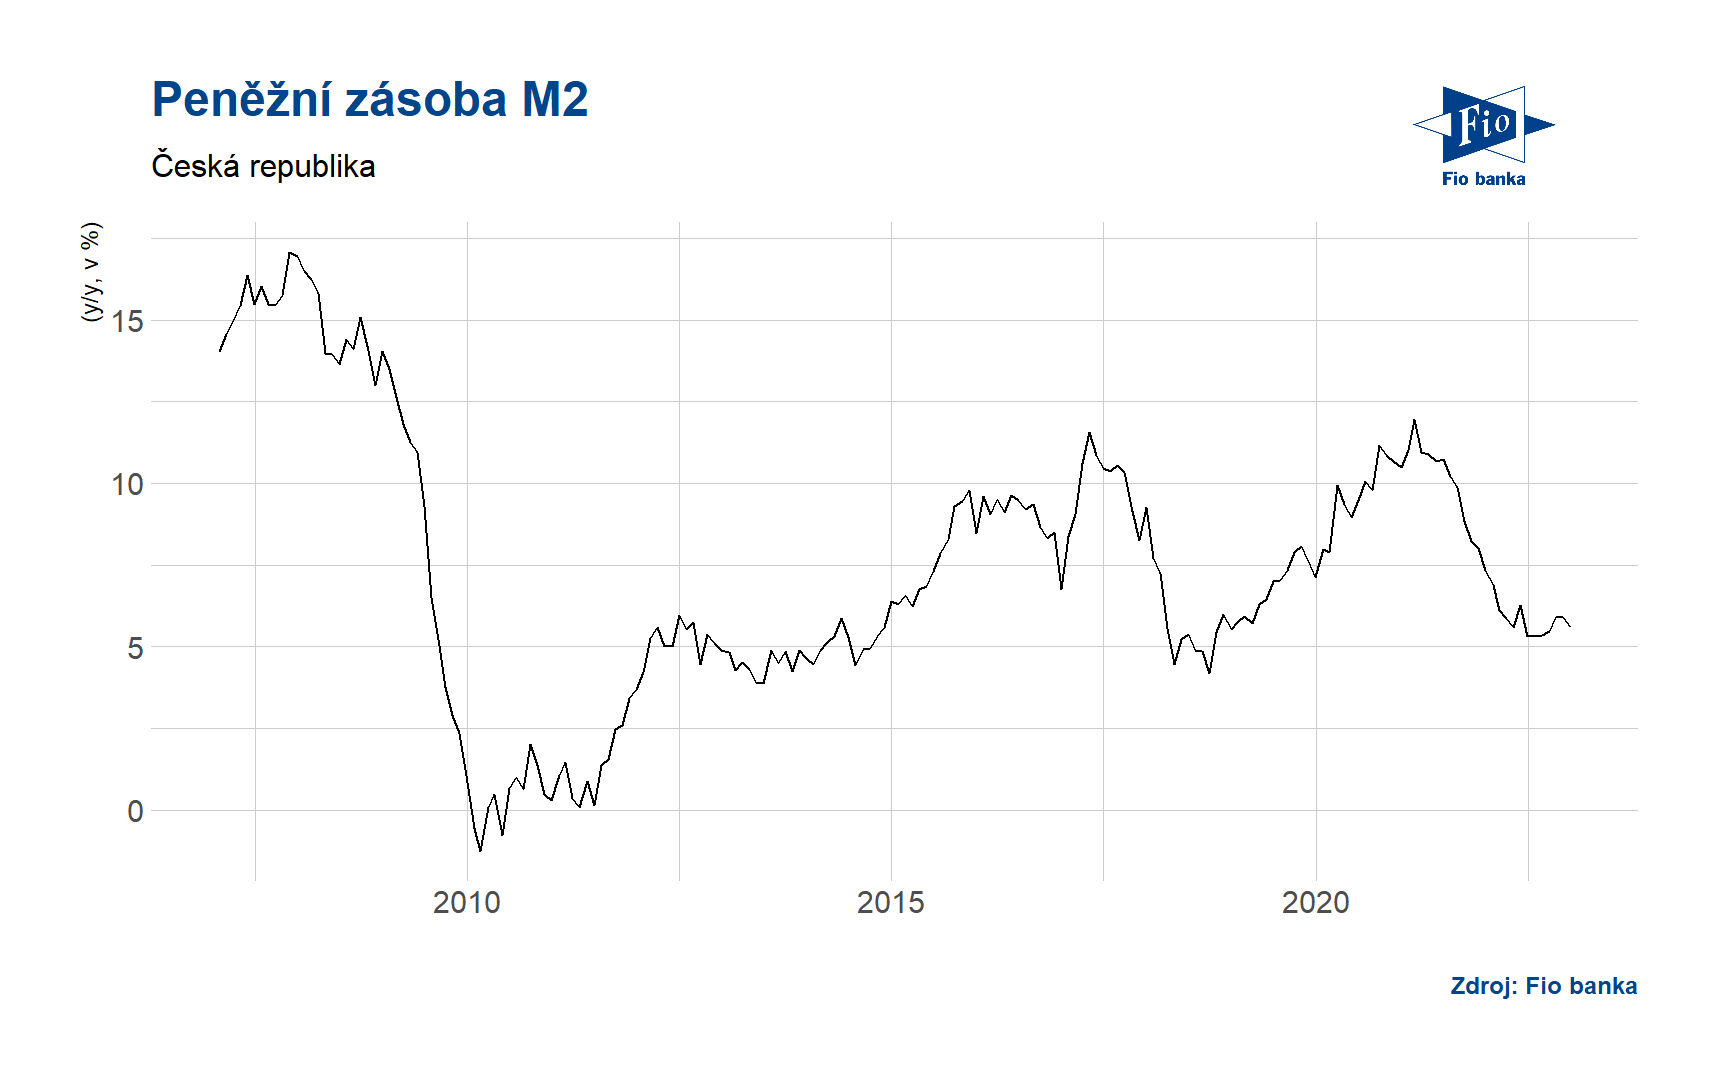 Vývoj peněžní zásoby M2 v ČR